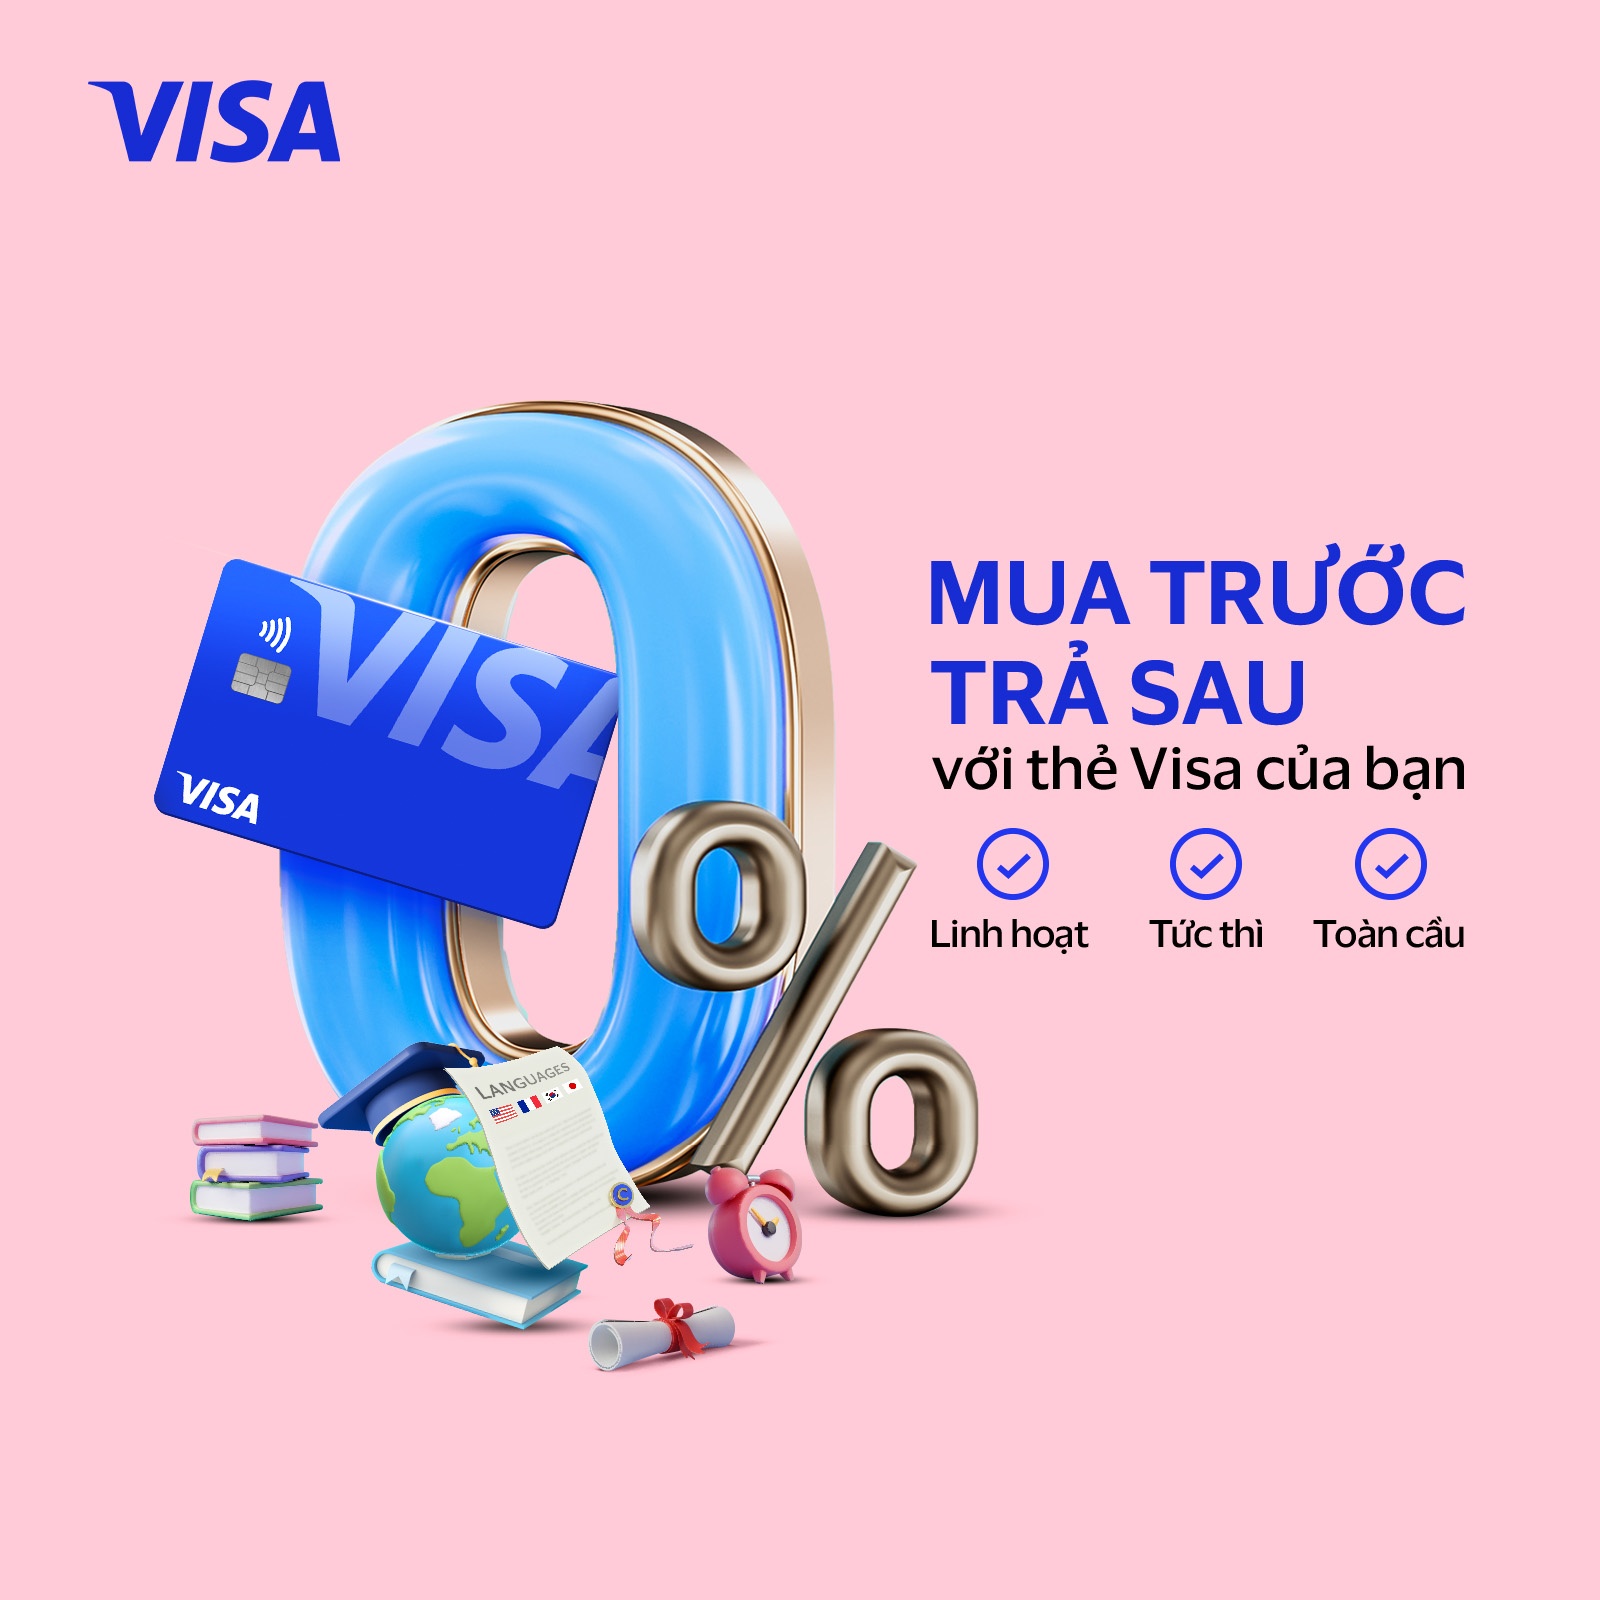 Visa phát triển tài chính toàn diện tại Việt Nam với giải pháp trả góp